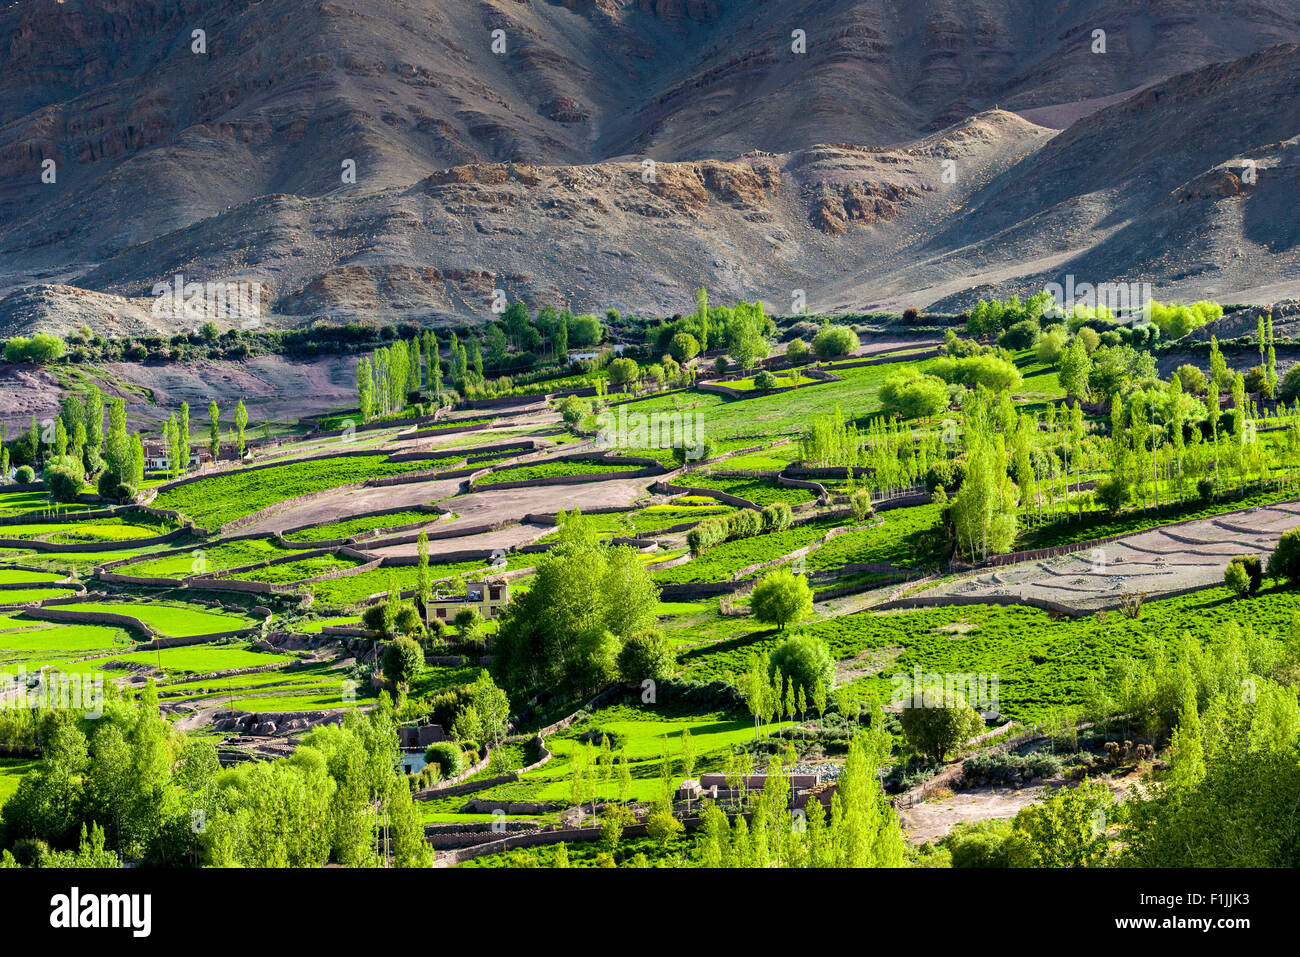 Vue aérienne de champs verts et de maisons de ferme dans une petite vallée au-dessus de la vallée de l'Indus, Mâtho, le Jammu-et-Cachemire, l'Inde Banque D'Images